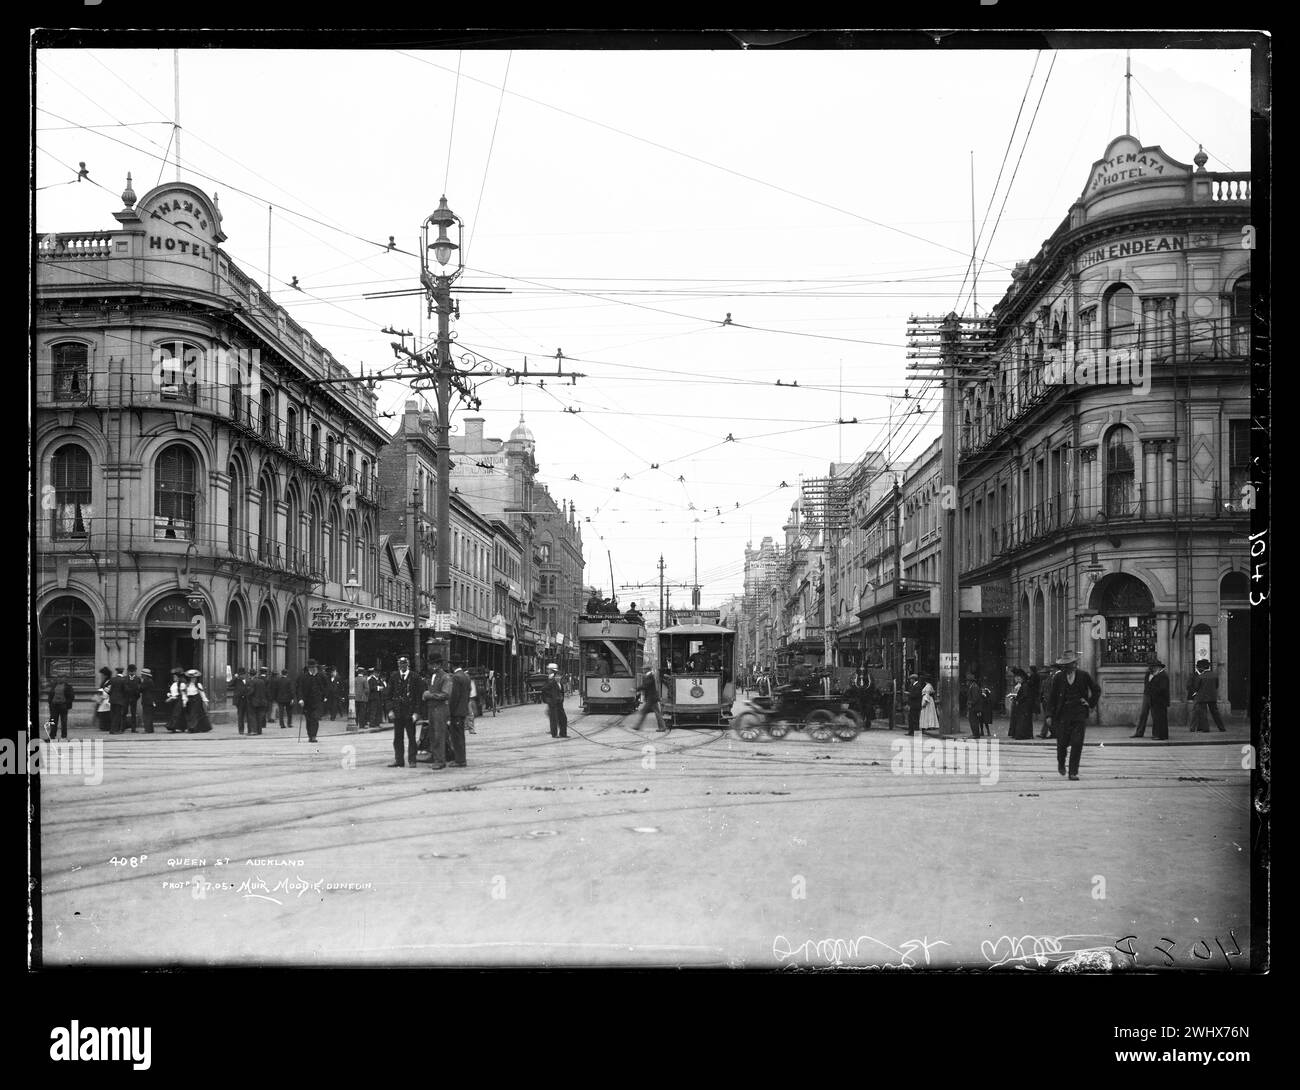 Queen Street, centro urbano con tram e gente sulla strada commerciale Auckland, scena fotografica di strada d'epoca dalla nuova Zelanda, primi anni '1900 Foto Stock